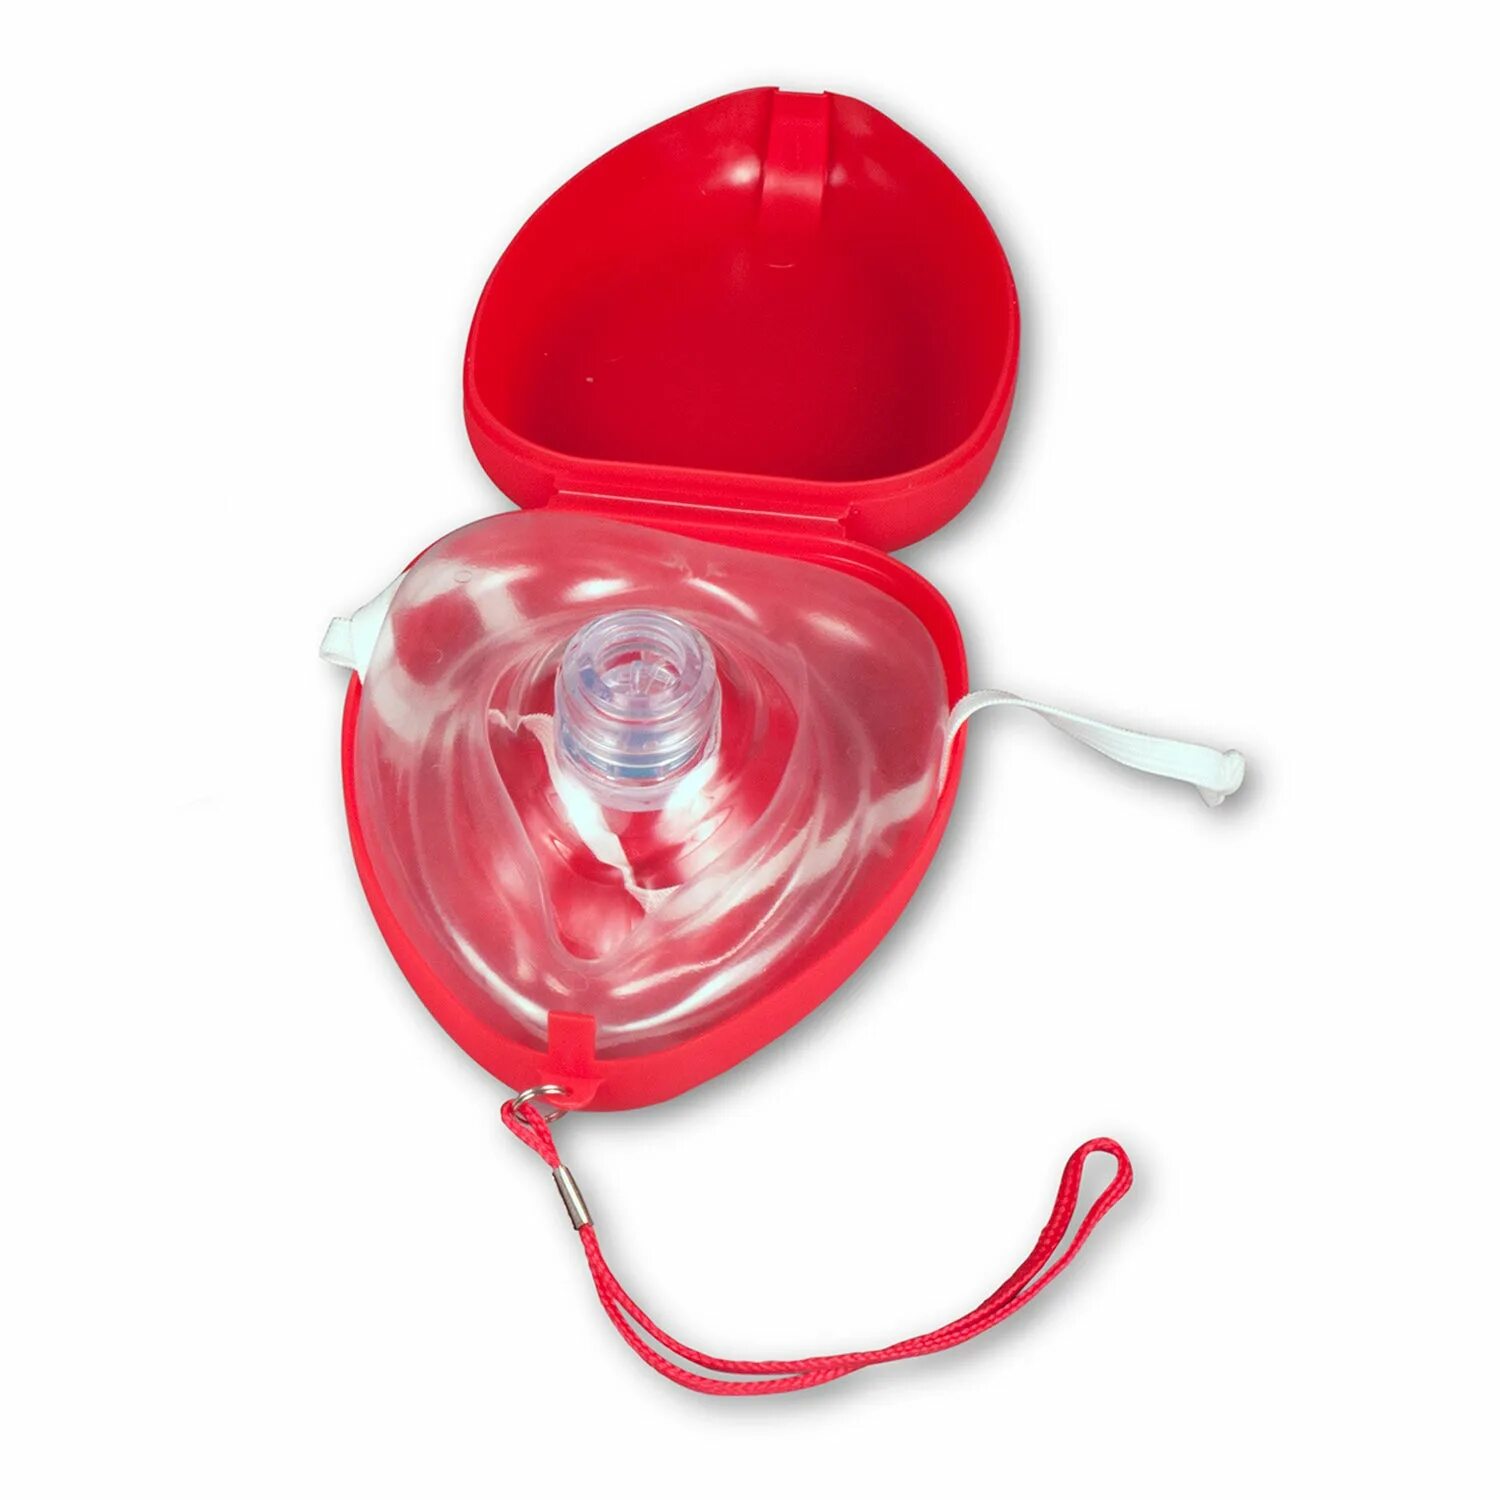 Карманная маска для ИВЛ "рот-маска" Laerdal. Маска для искусственного дыхания ADSAFE CPR Pocket. Маска реанимационная для СЛР. Карманная маска для реанимации с клапаном. Назначение карманной маски с обратным клапаном